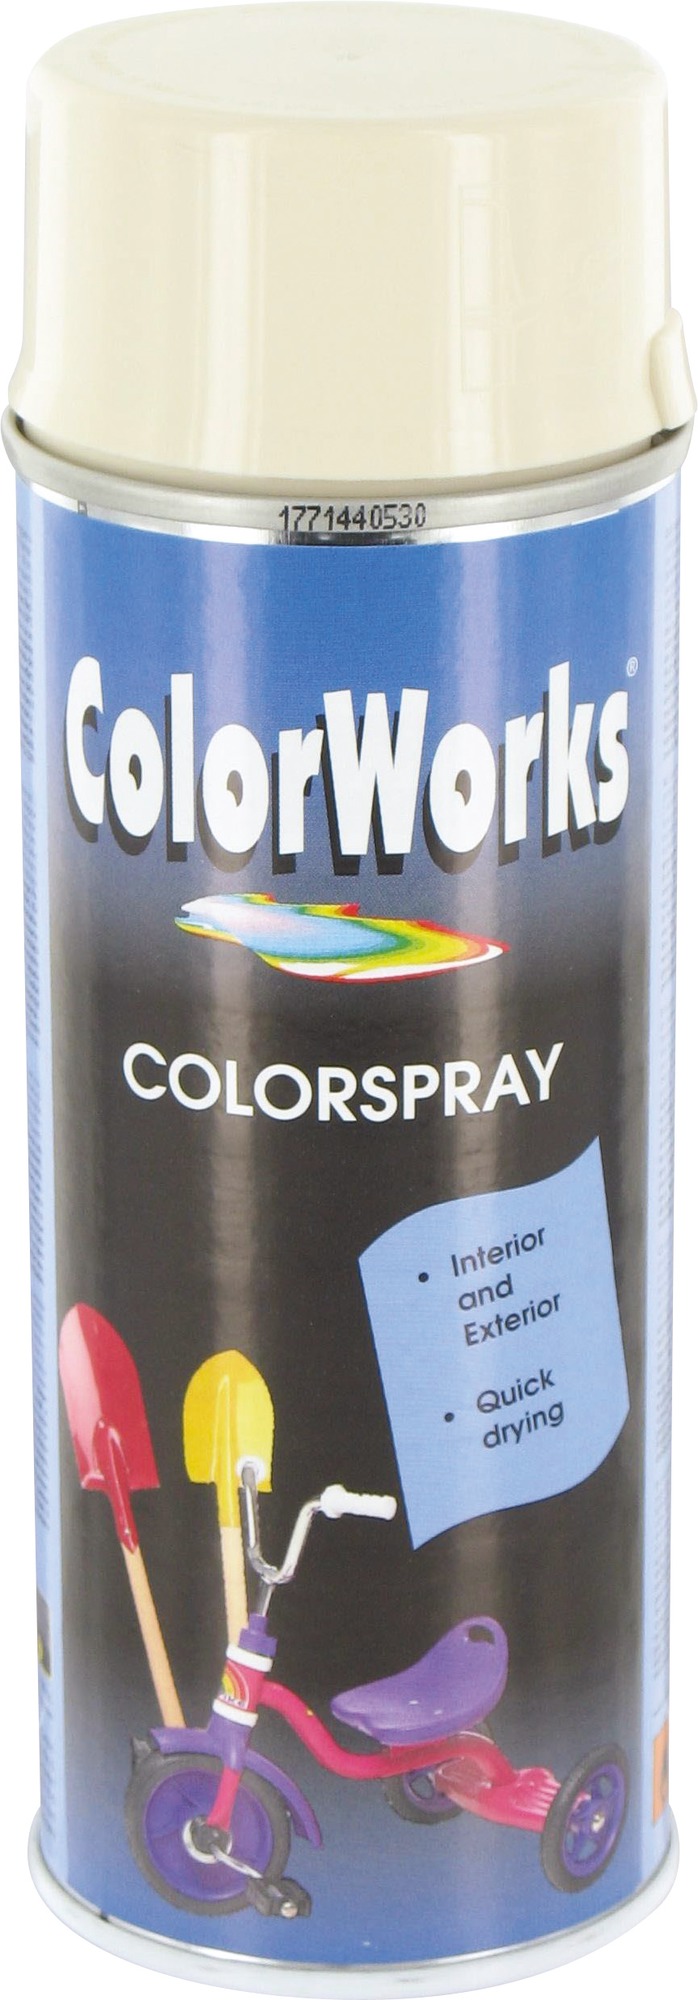 Peinture brillante - Colorworks - Blanc ivoire